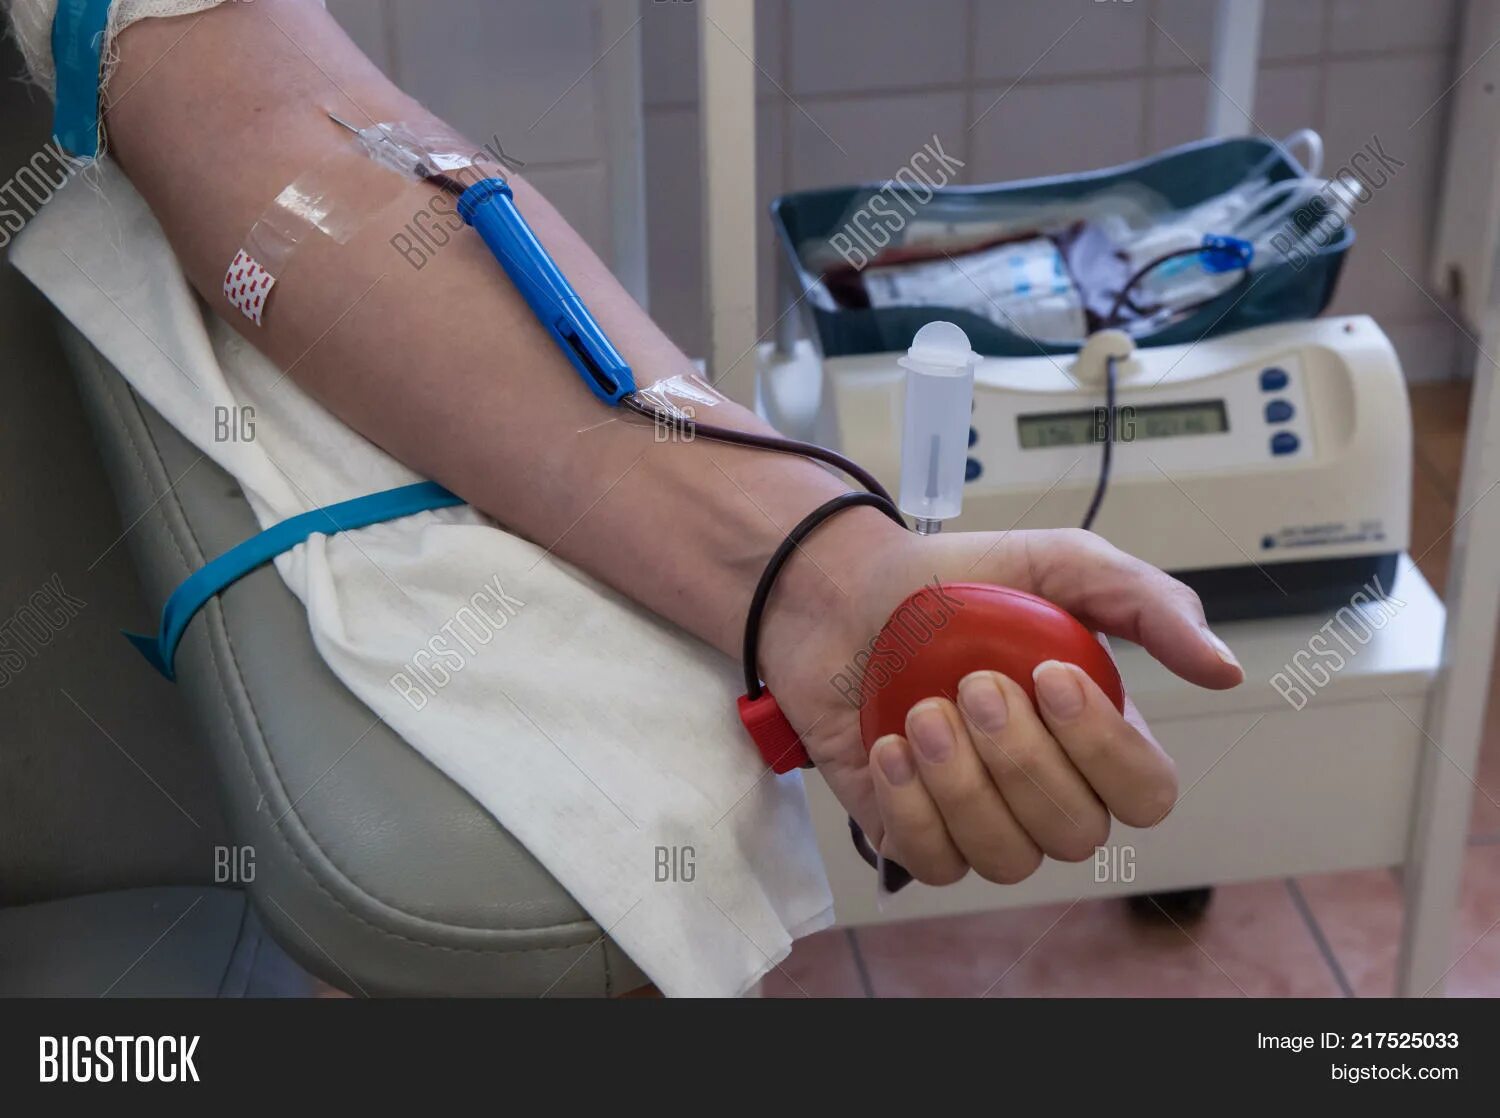 Аппарат для забора крови донор. Игла для взятия крови у донора. После того как взяли кровь